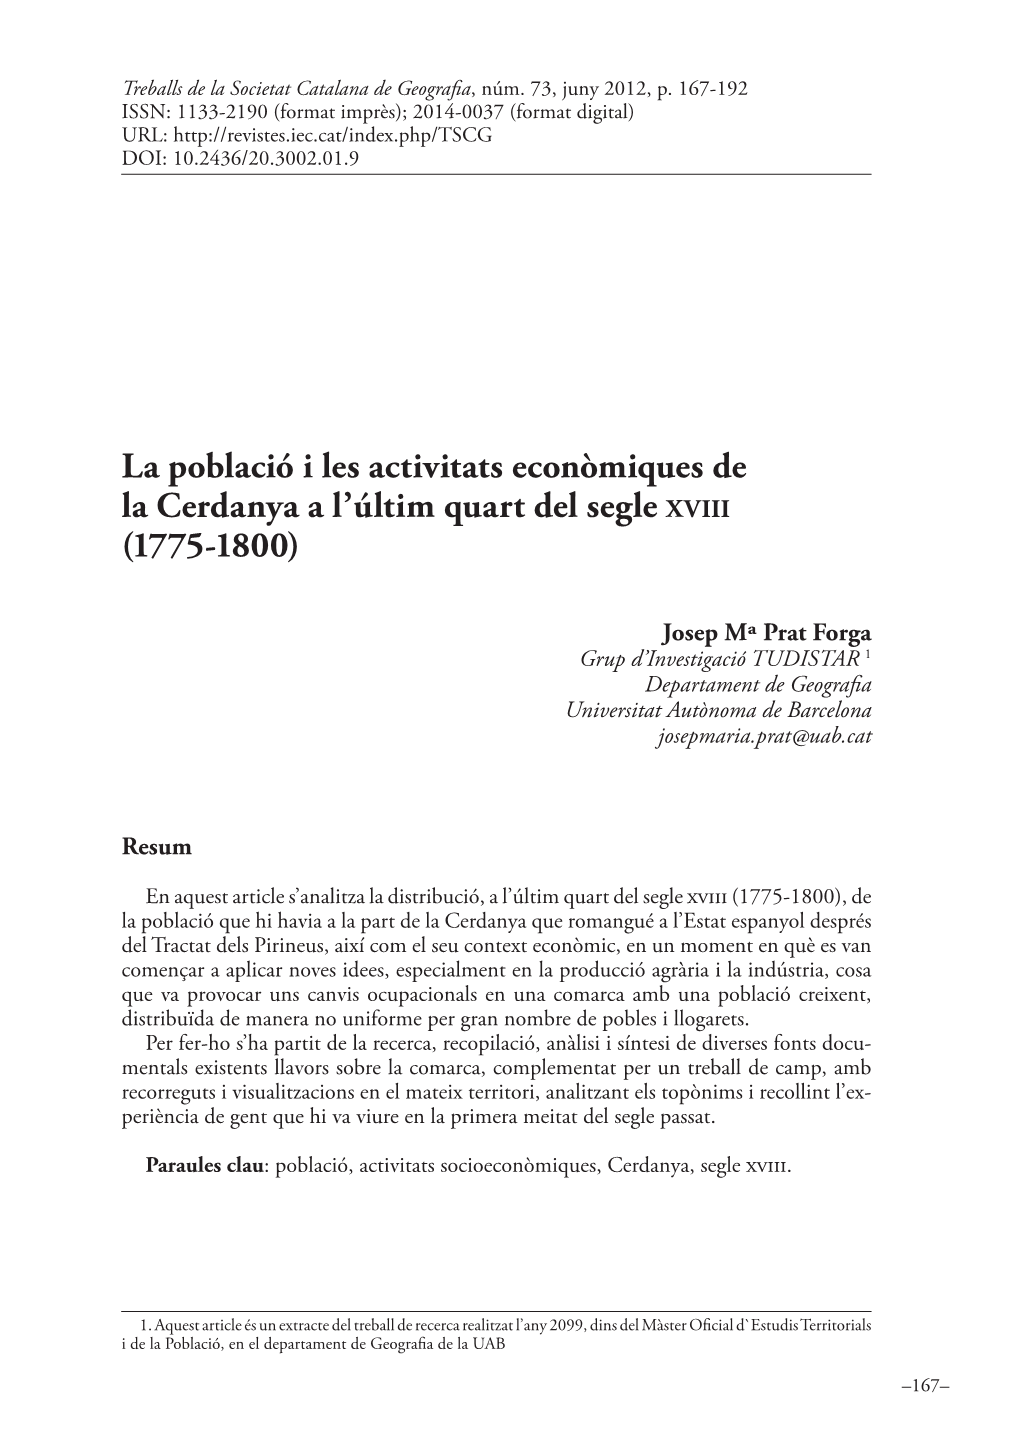 La Població I Les Activitats Econòmiques De La Cerdanya a L’Últim Quart Del Segle X V I I I (1775-1800)